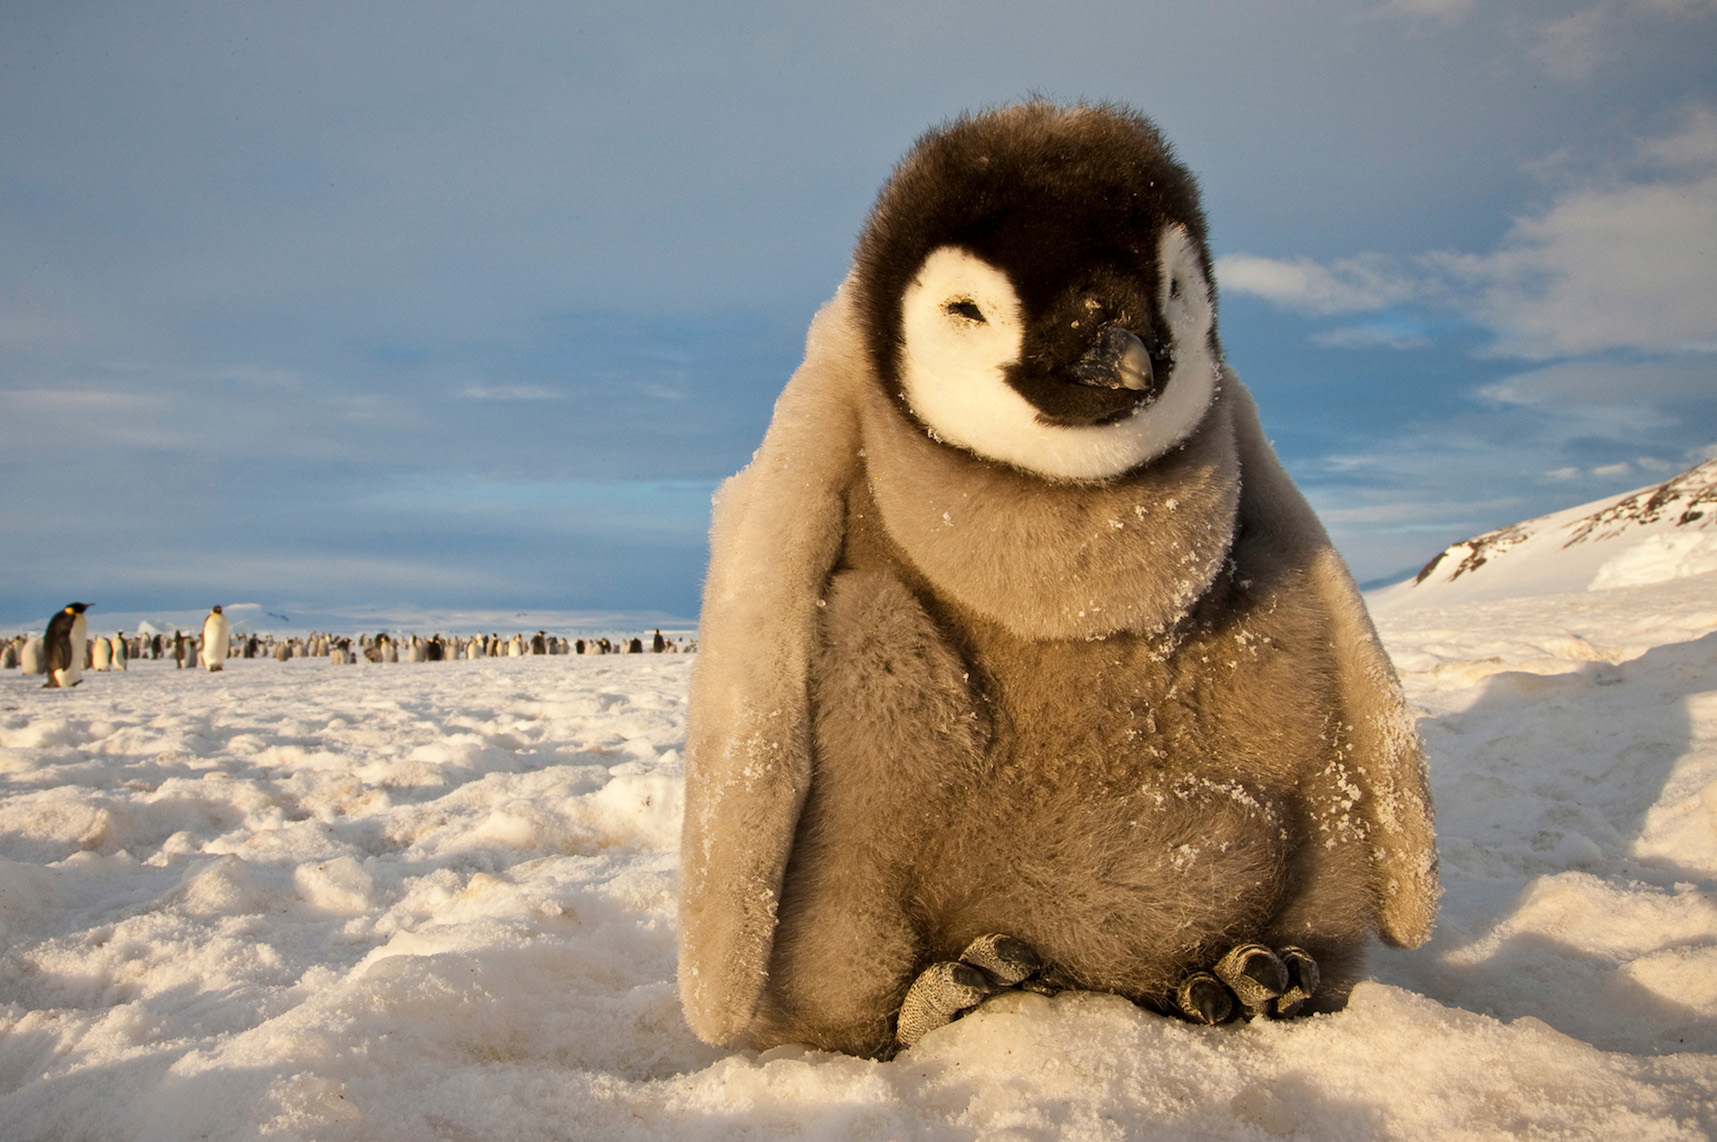 一隻皇帝企鵝幼雛在南大洋南極灣羅斯海(Ross Sea)的最大型皇帝企鵝繁殖群。皇帝企鵝的繁殖習慣需要依賴冰雪，因而成為南極洲最脆弱的物種之一。©Paul Nicklen